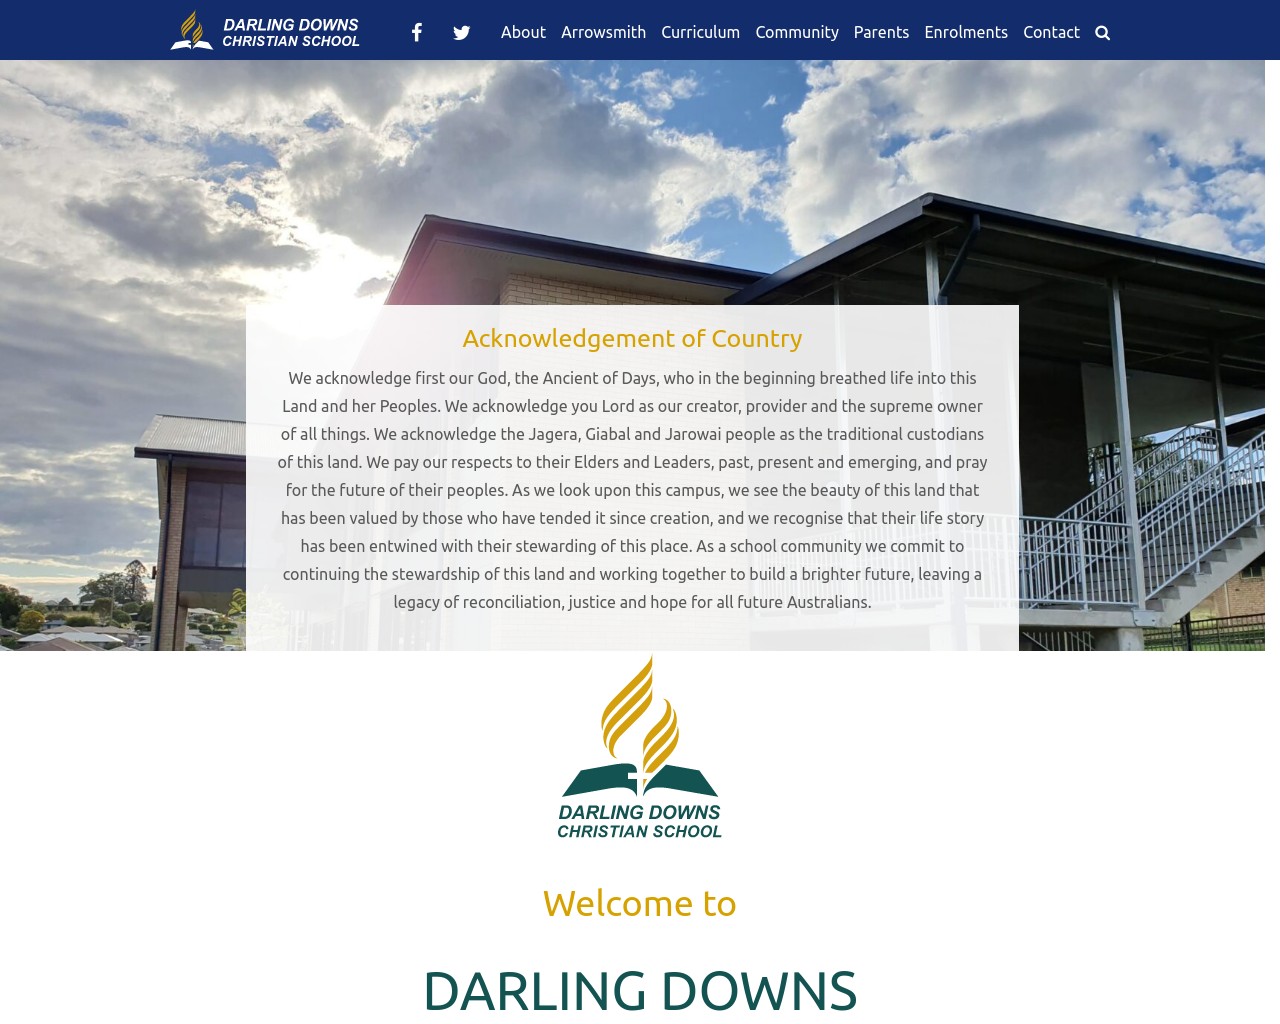 Darling Downs Christian School